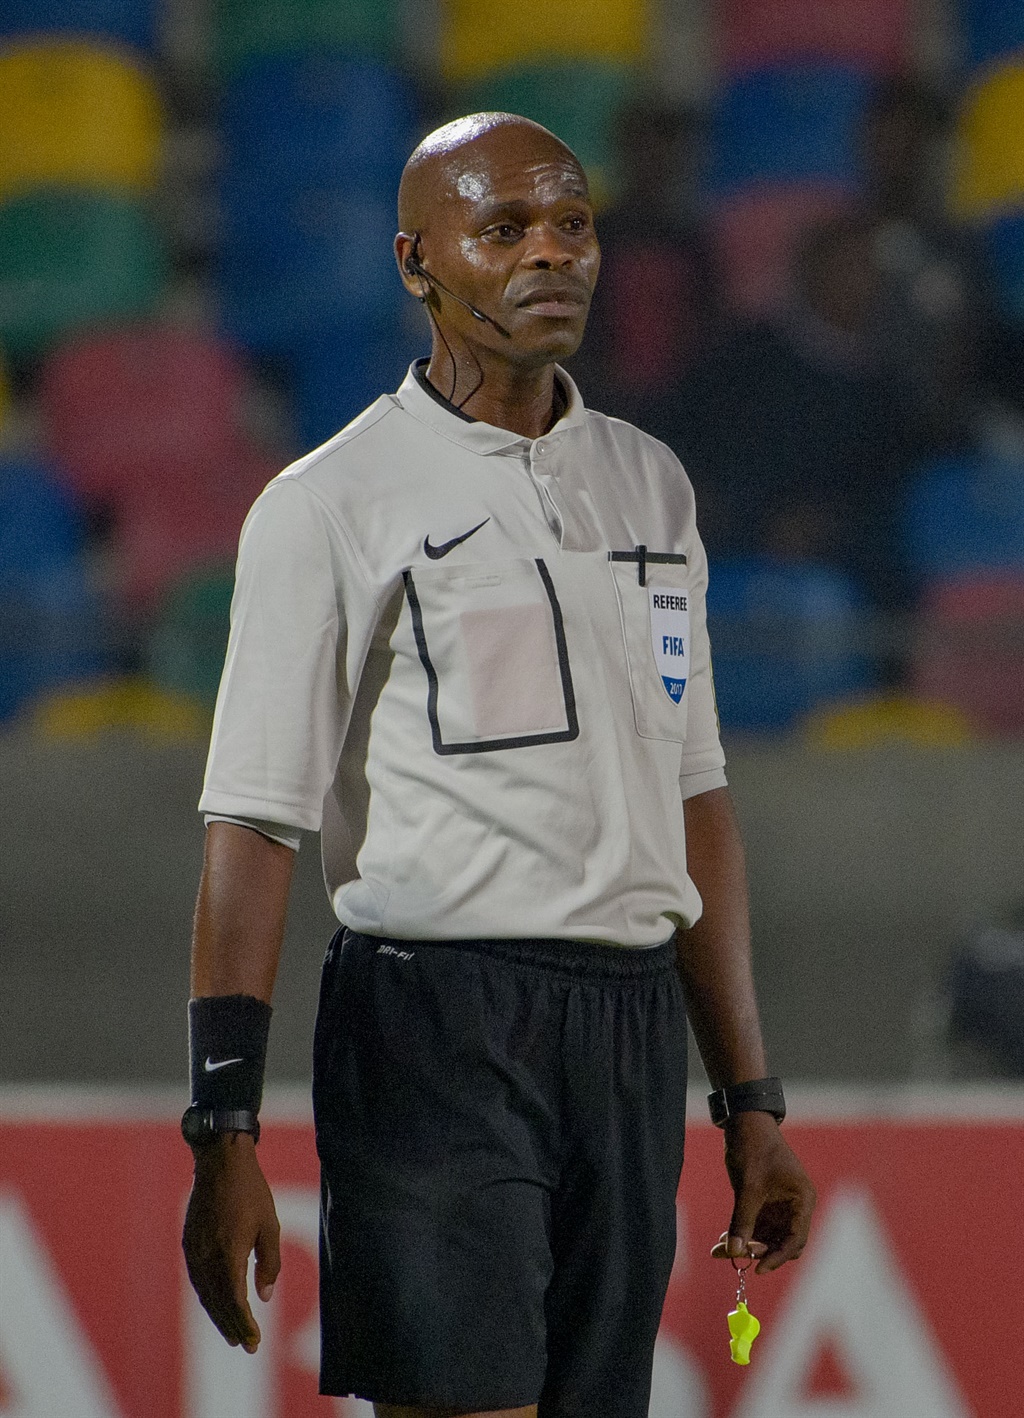 Referee Thando Ndzandzeka